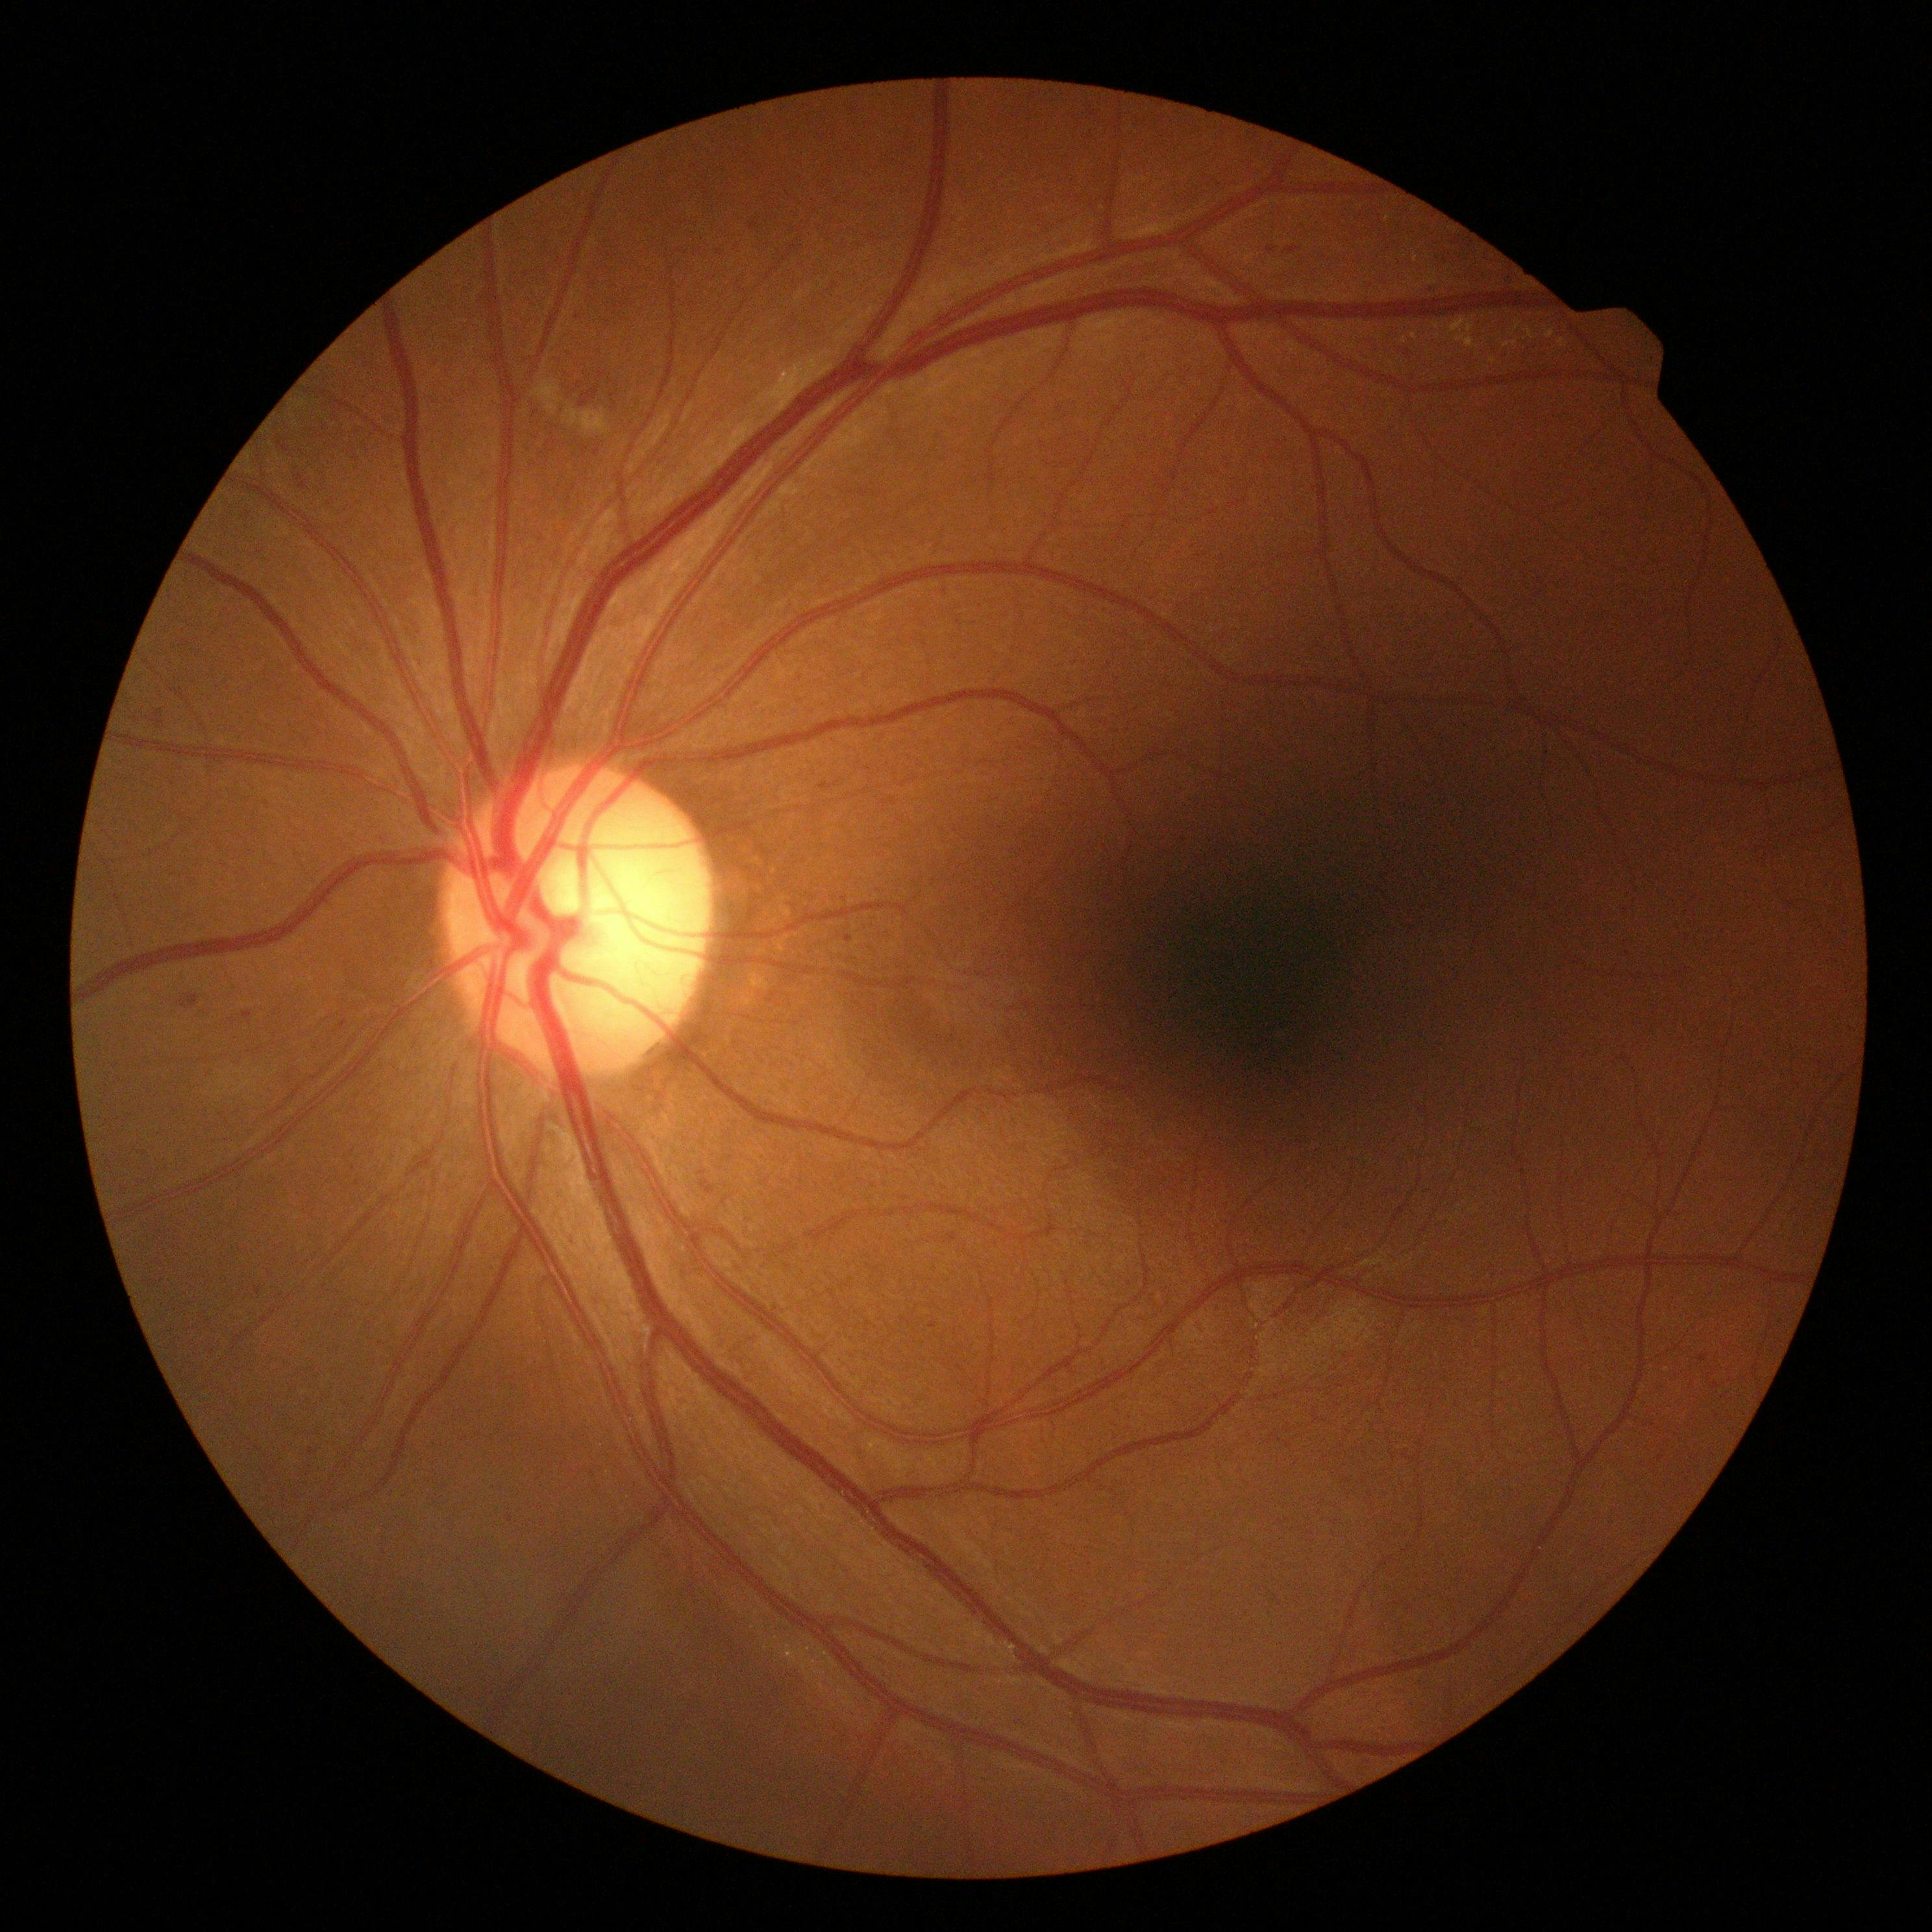 scan of eye showing diabetic macular oedema